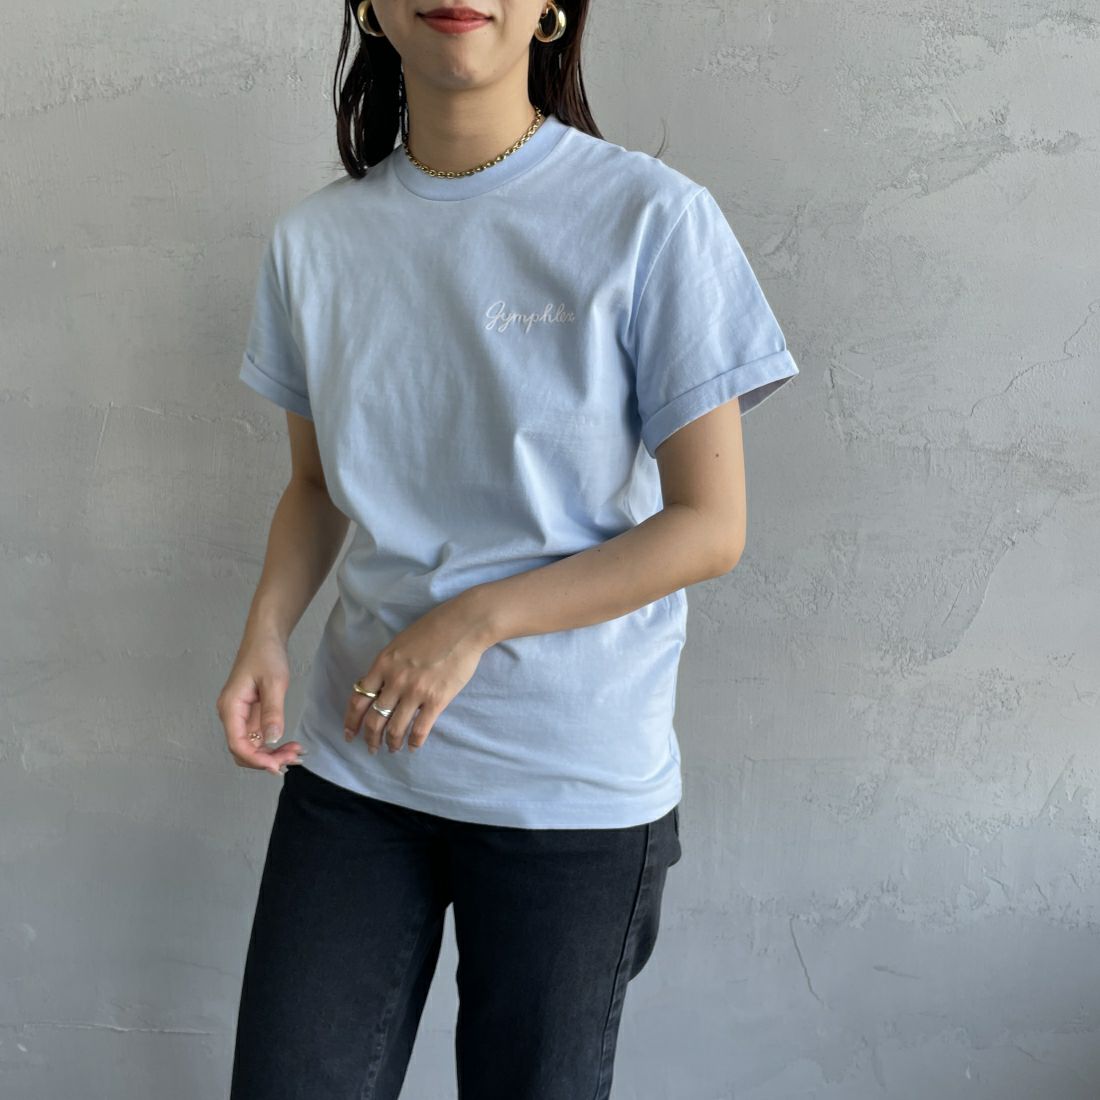 Gymphlex [ジムフレックス] ロールアップスリーブ ロゴ刺繍Tシャツ [J-1155CH] WHITE